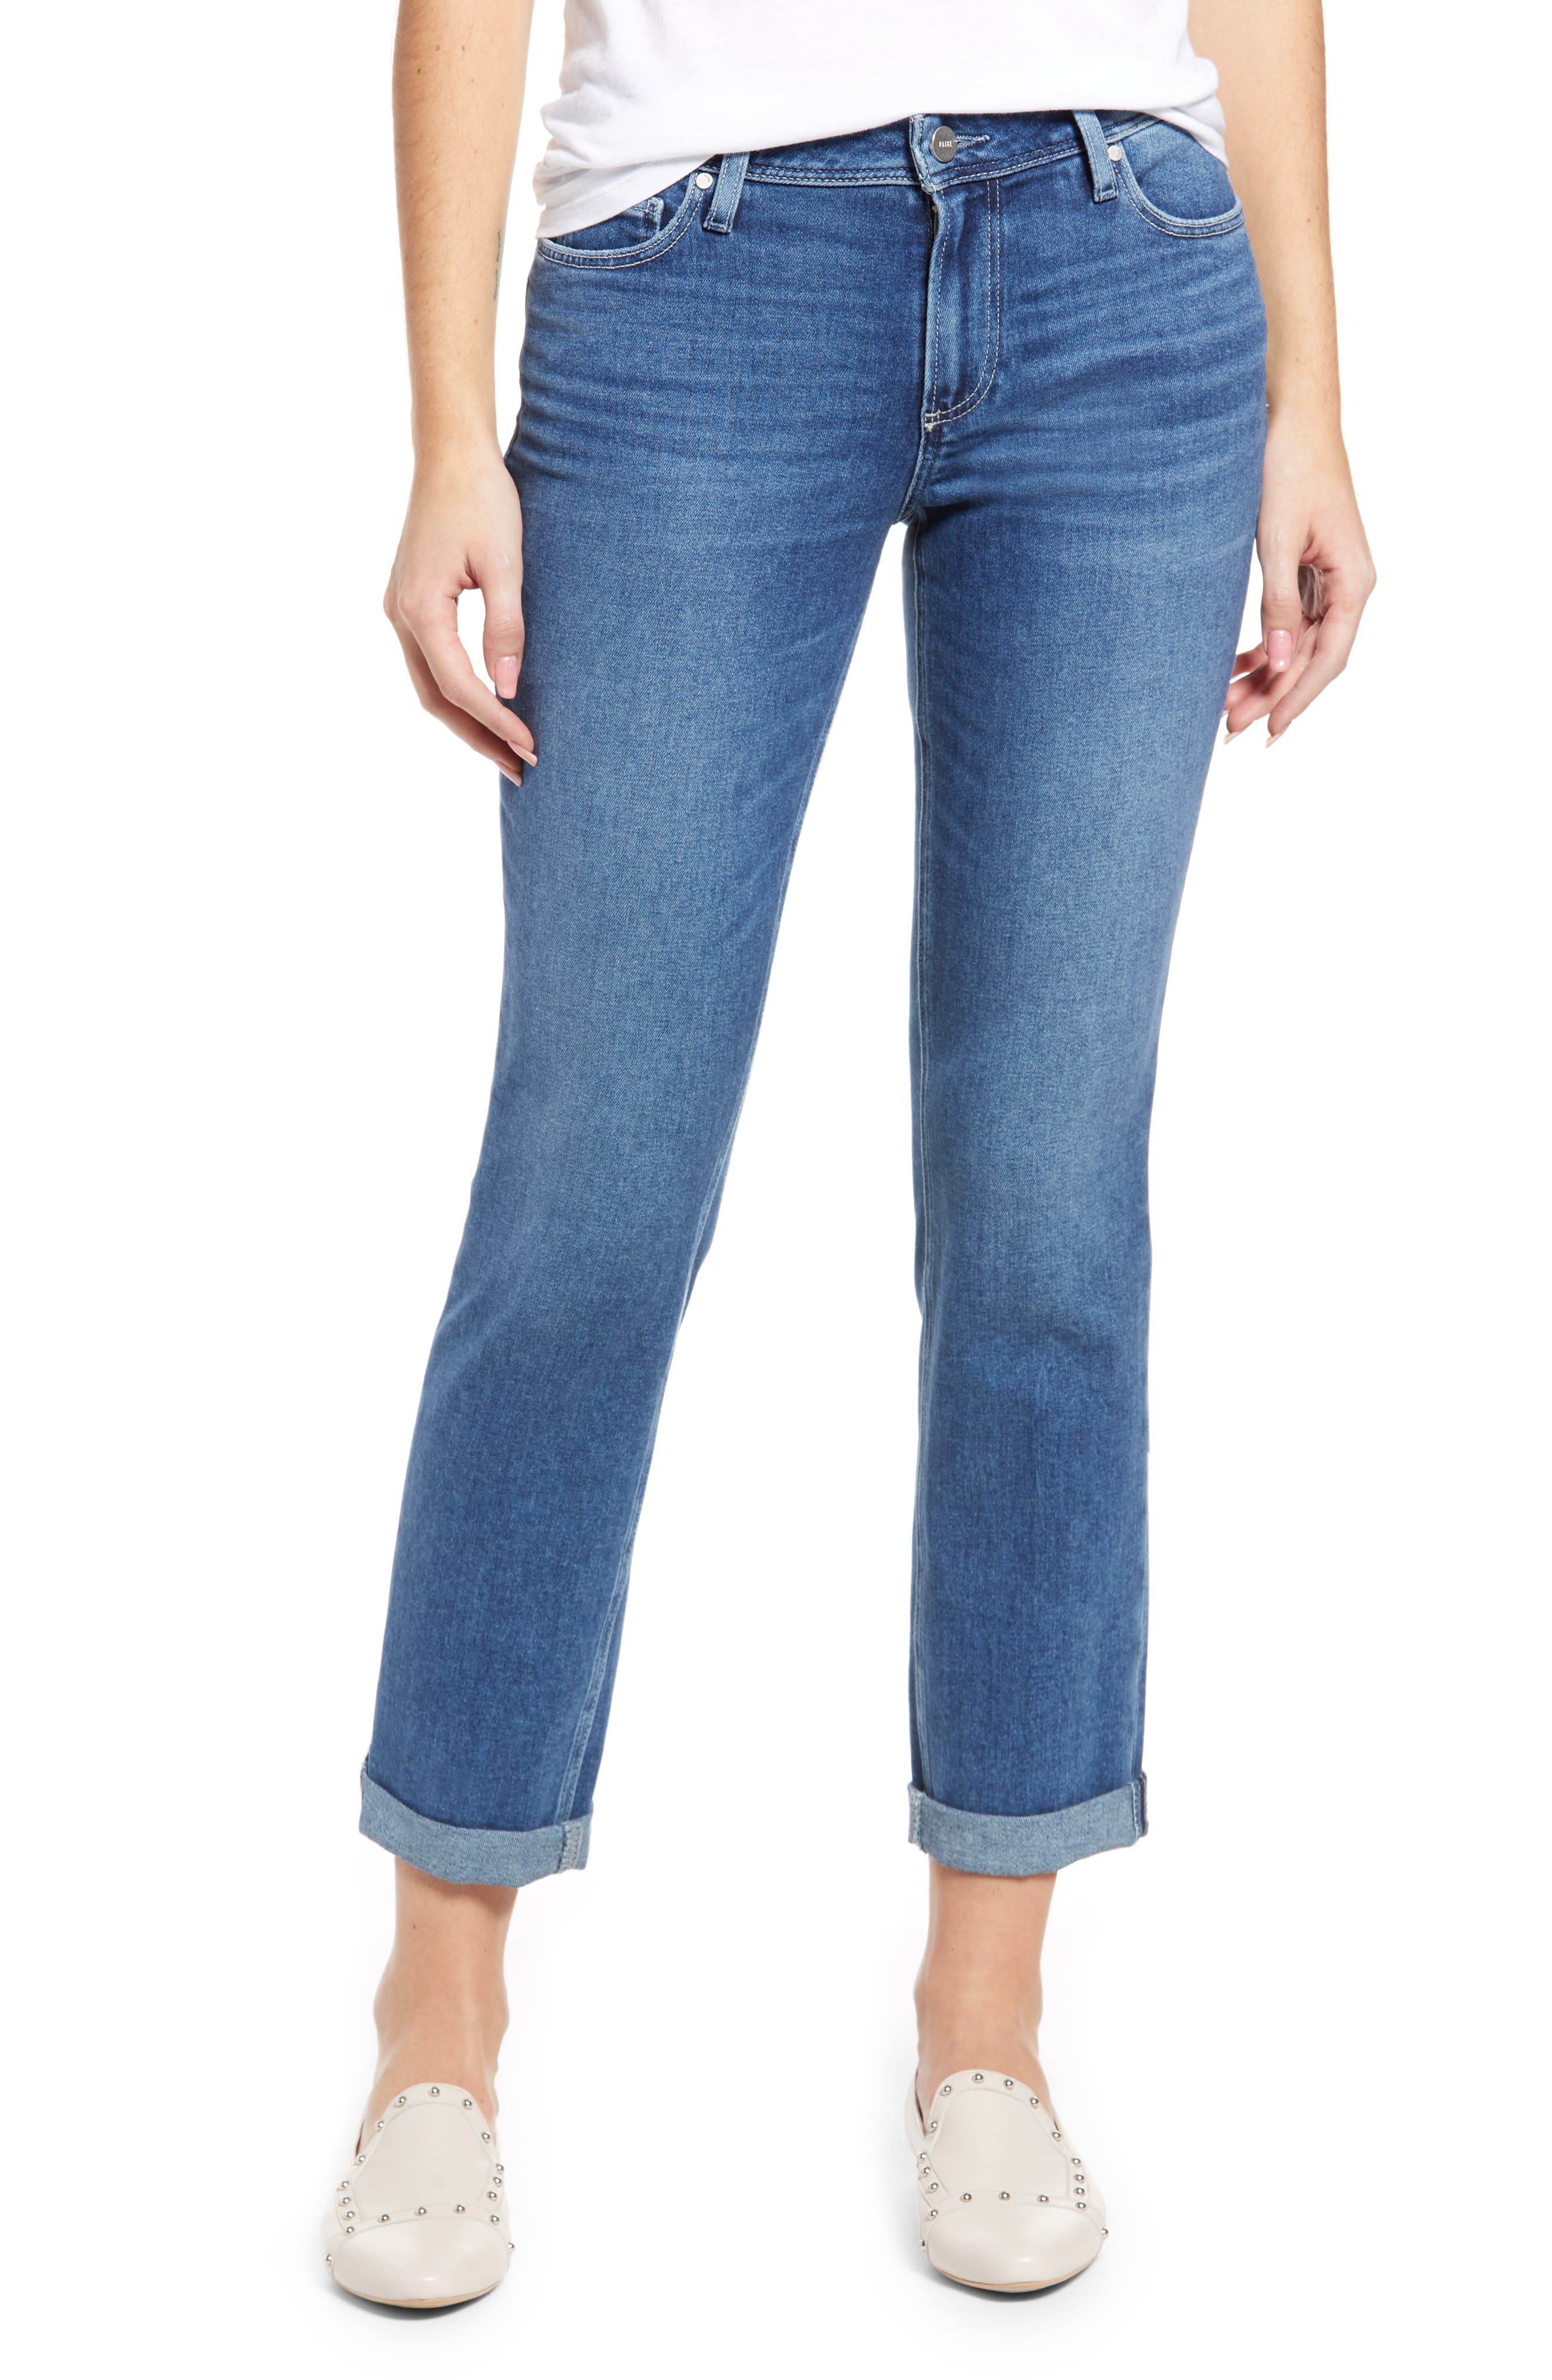 paige jeans online